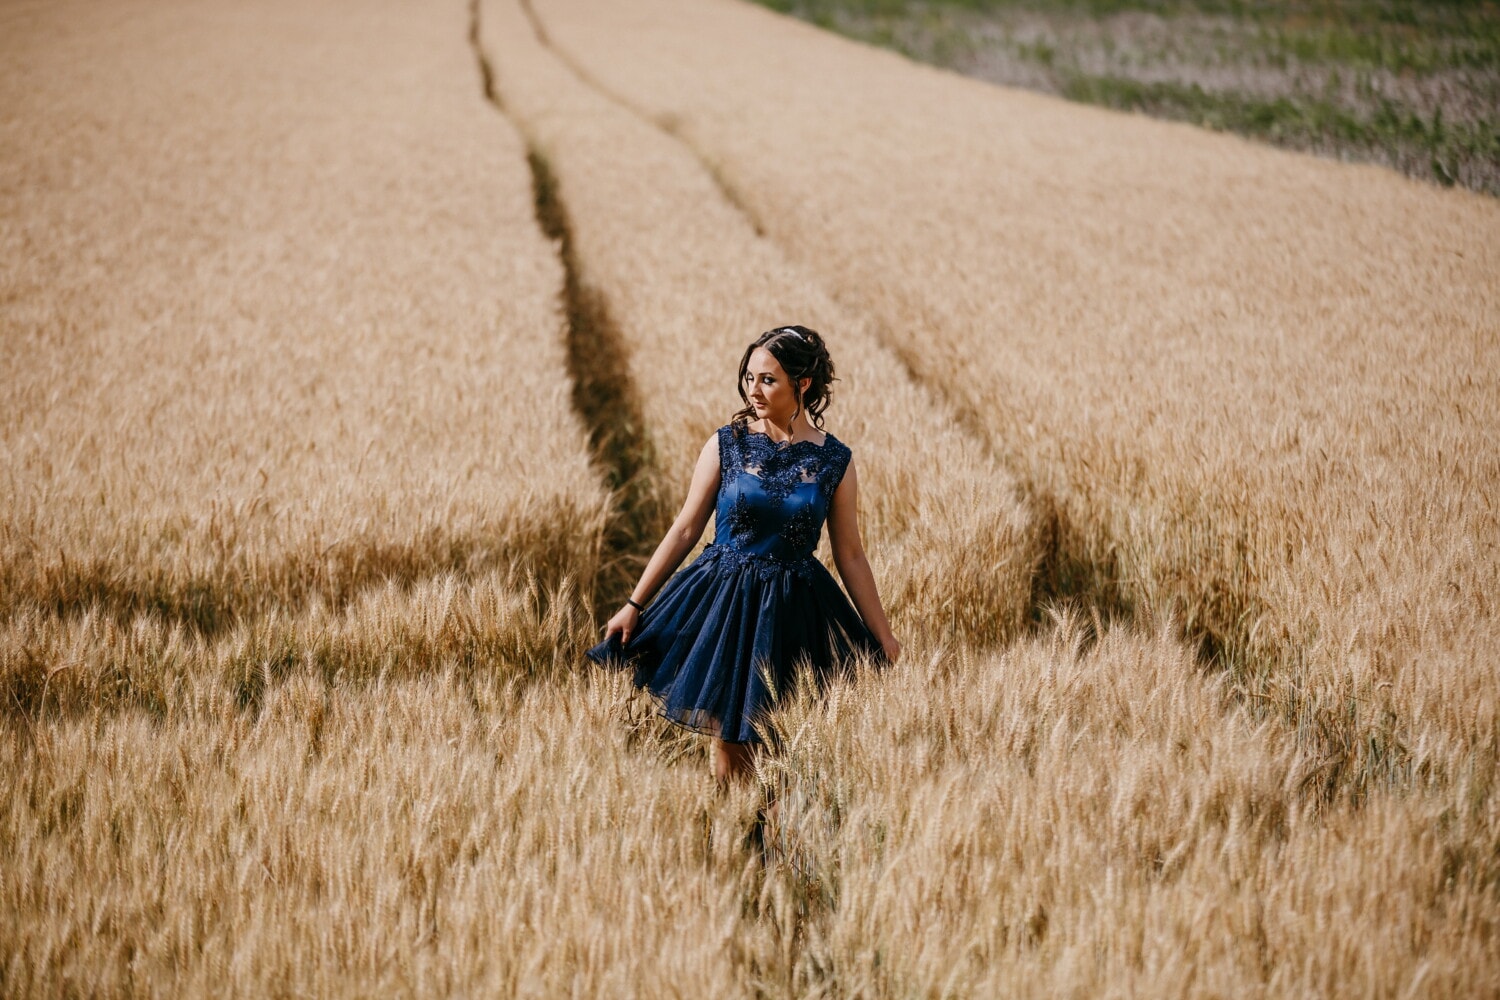 selo, lijepa djevojka, seljak, wheatfield, poljoprivreda, raž, polje, pšenica, žitarica, djevojka